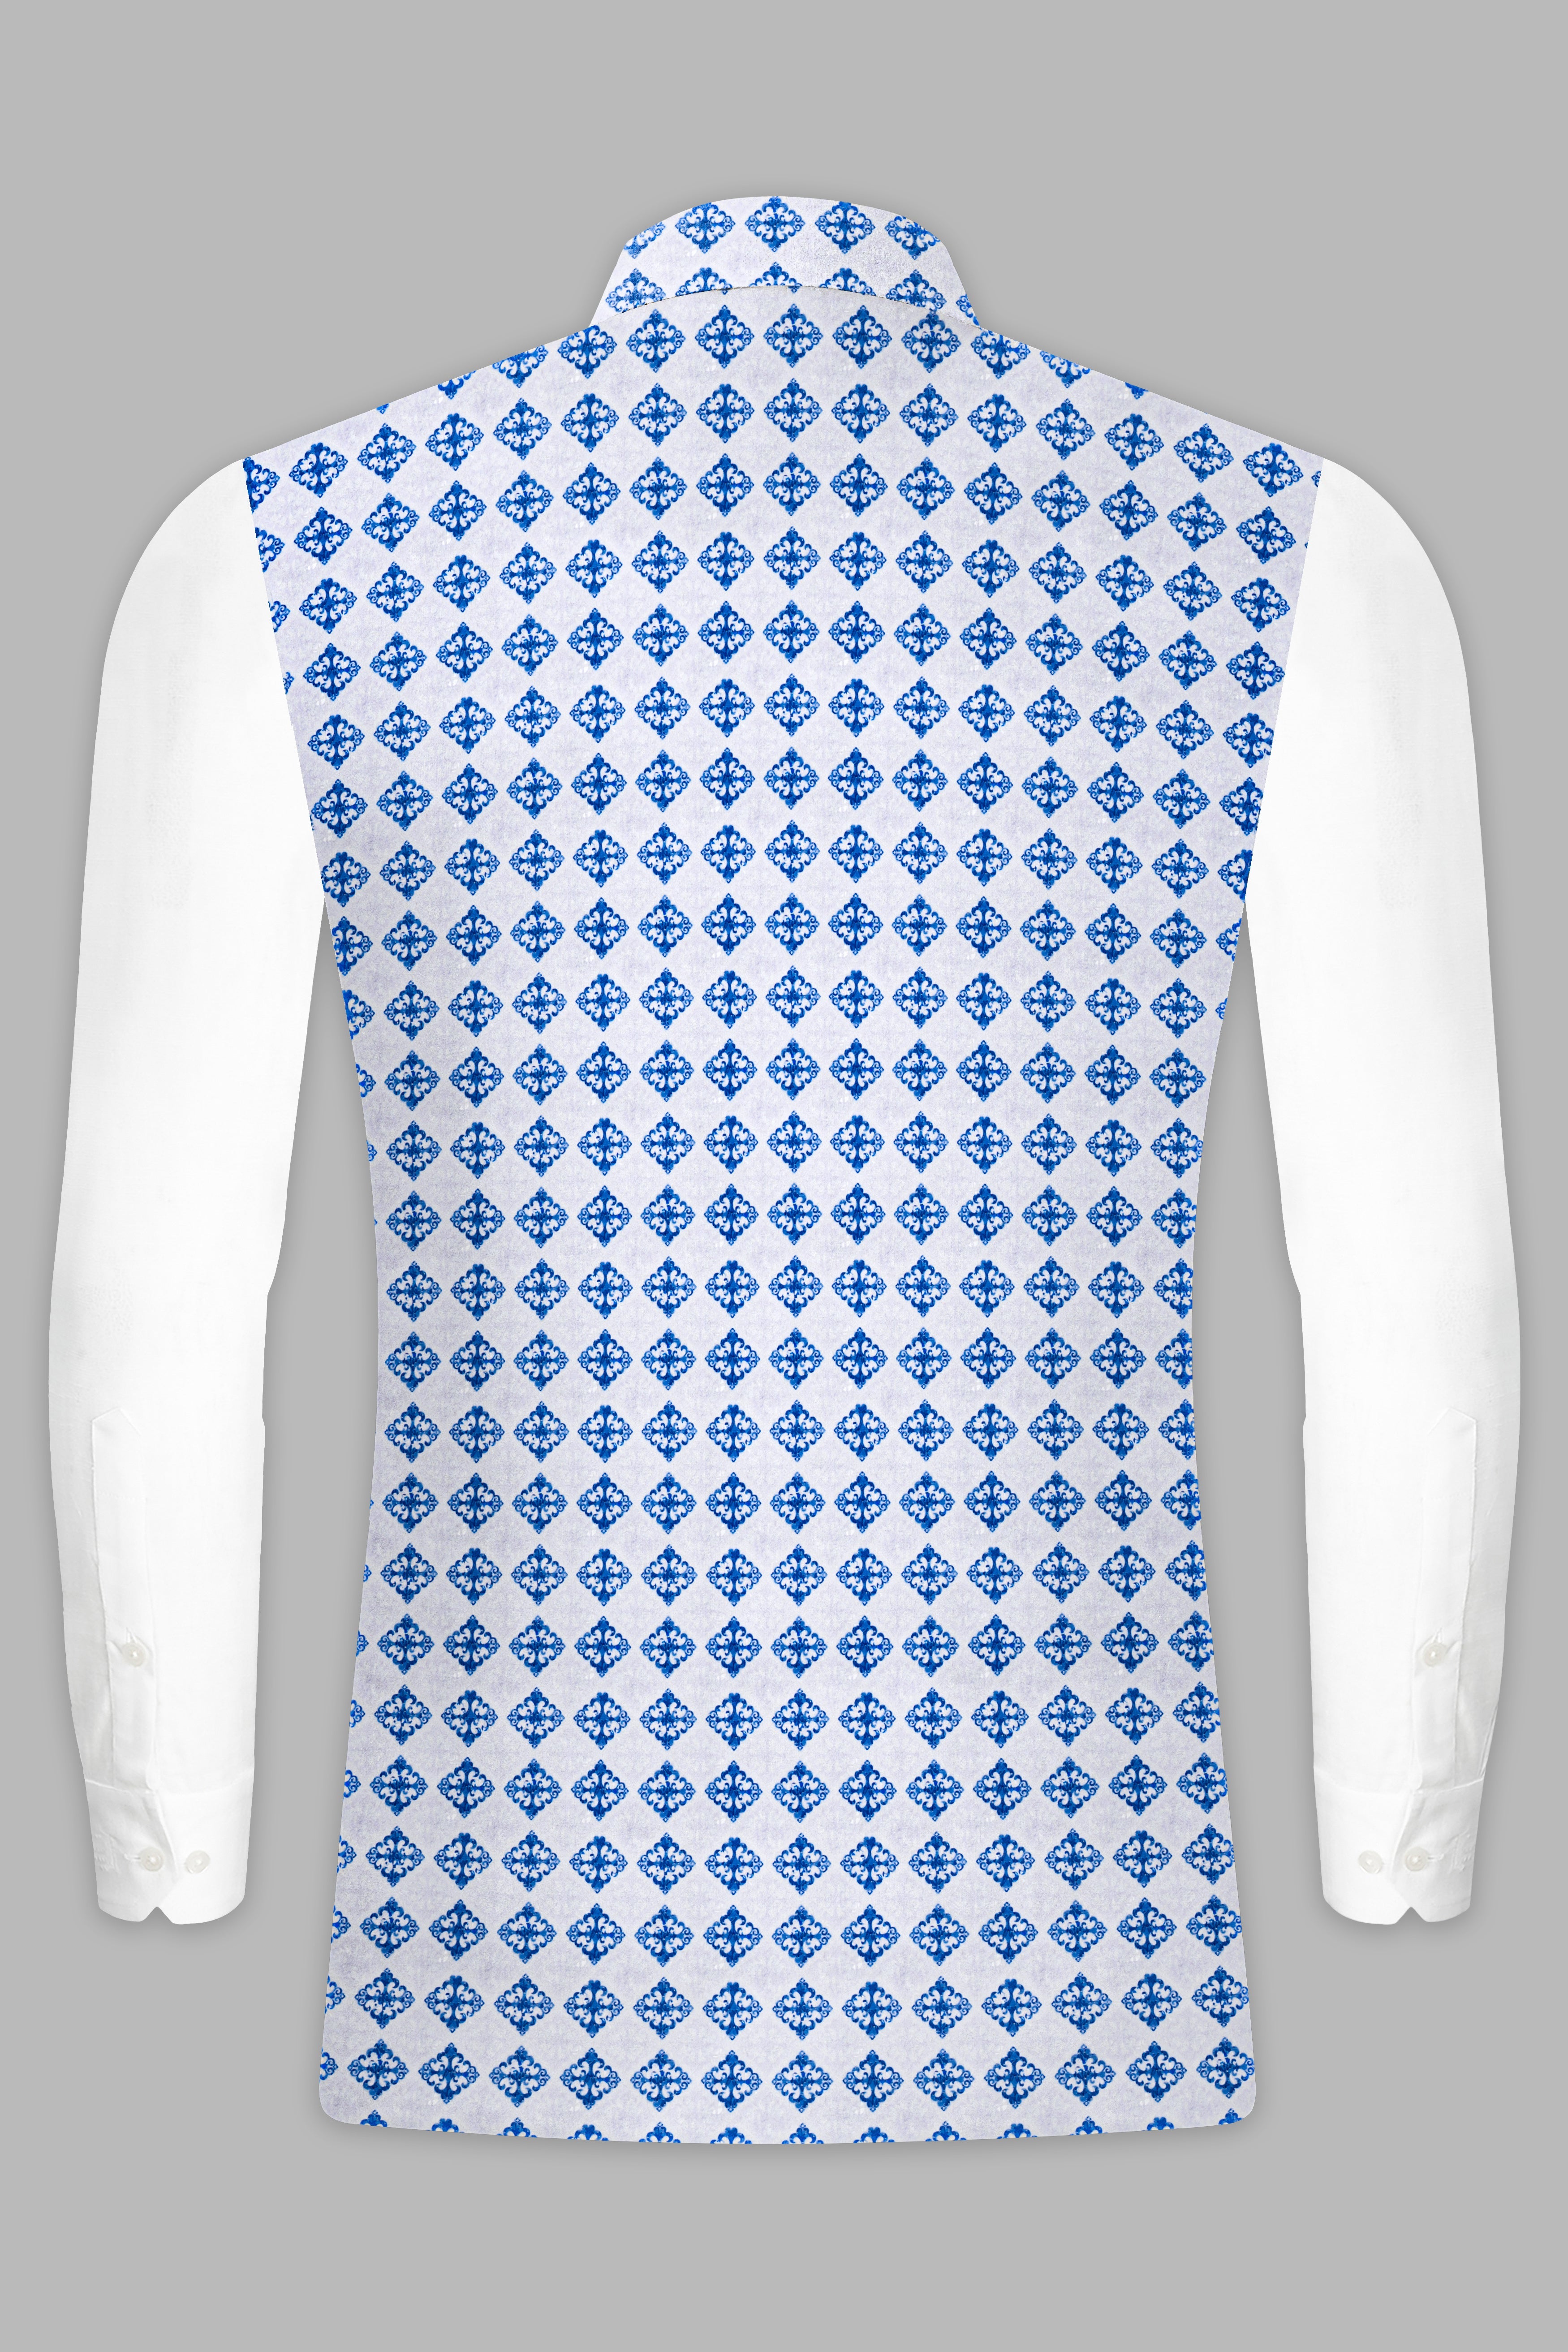 Bluish Blue And Bright White Trellis Designer Embroidered Nehru Jacket